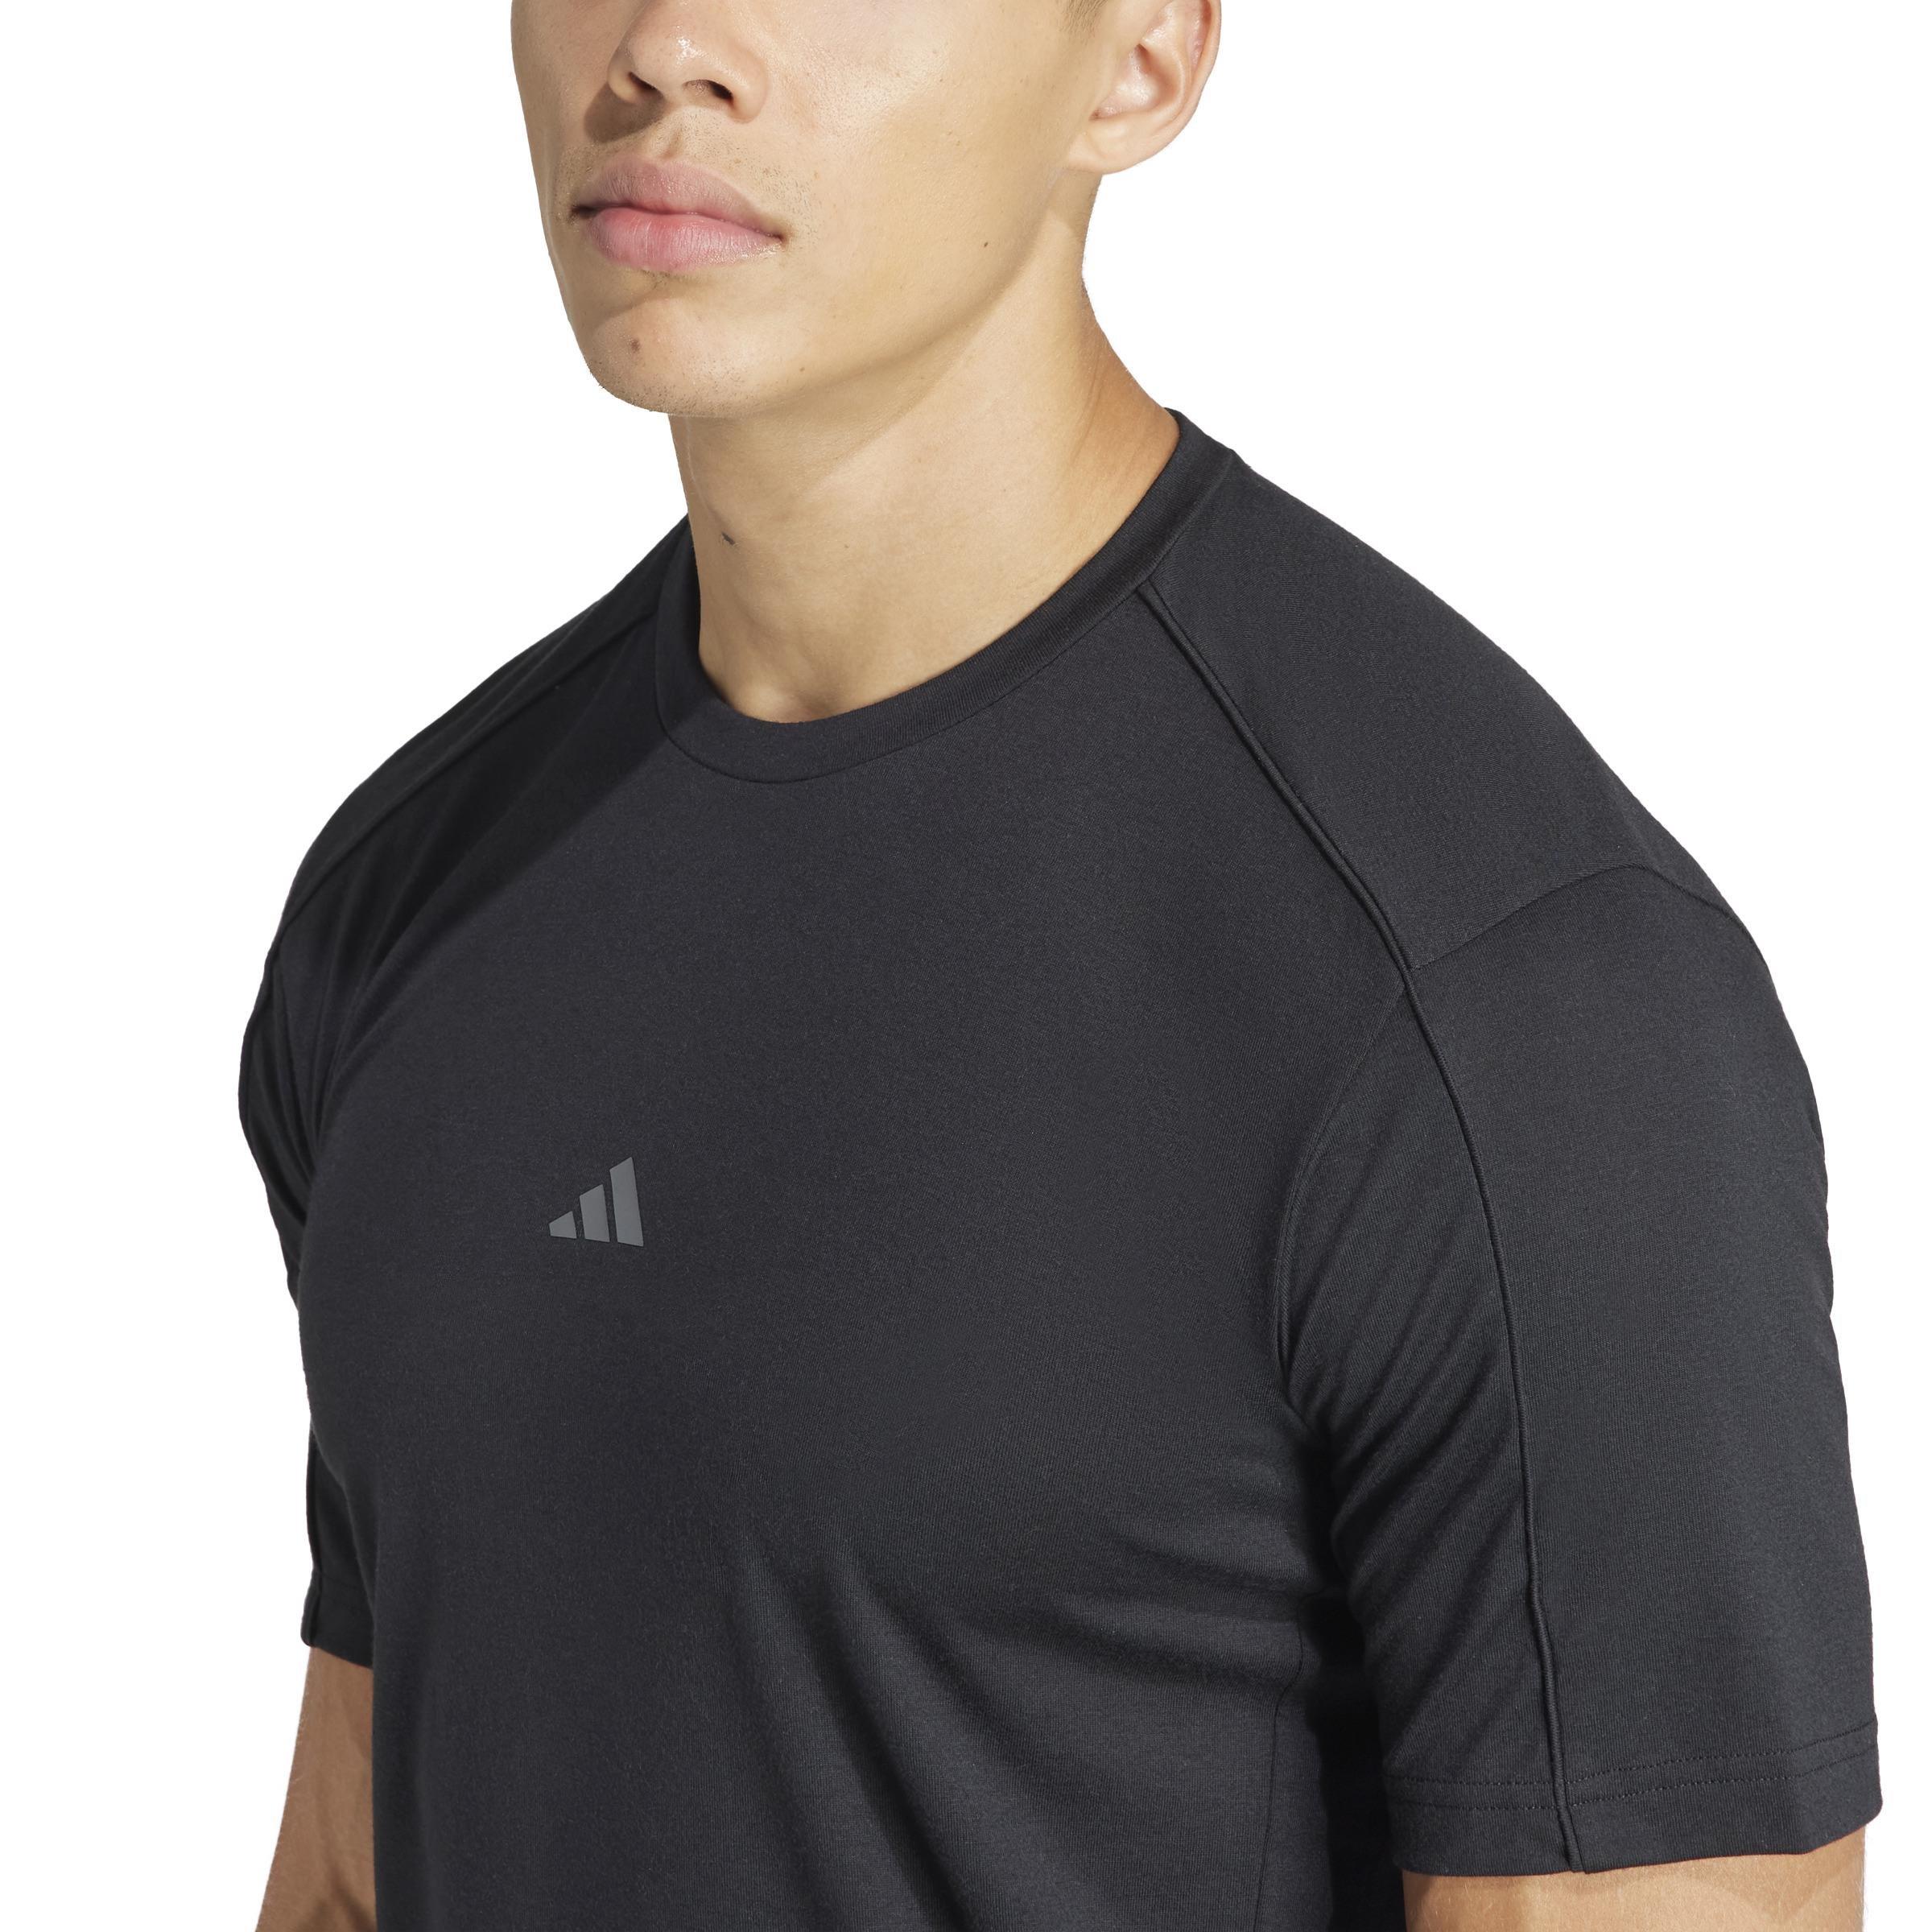 adidas - Men Yoga Training T-Shirt, Black